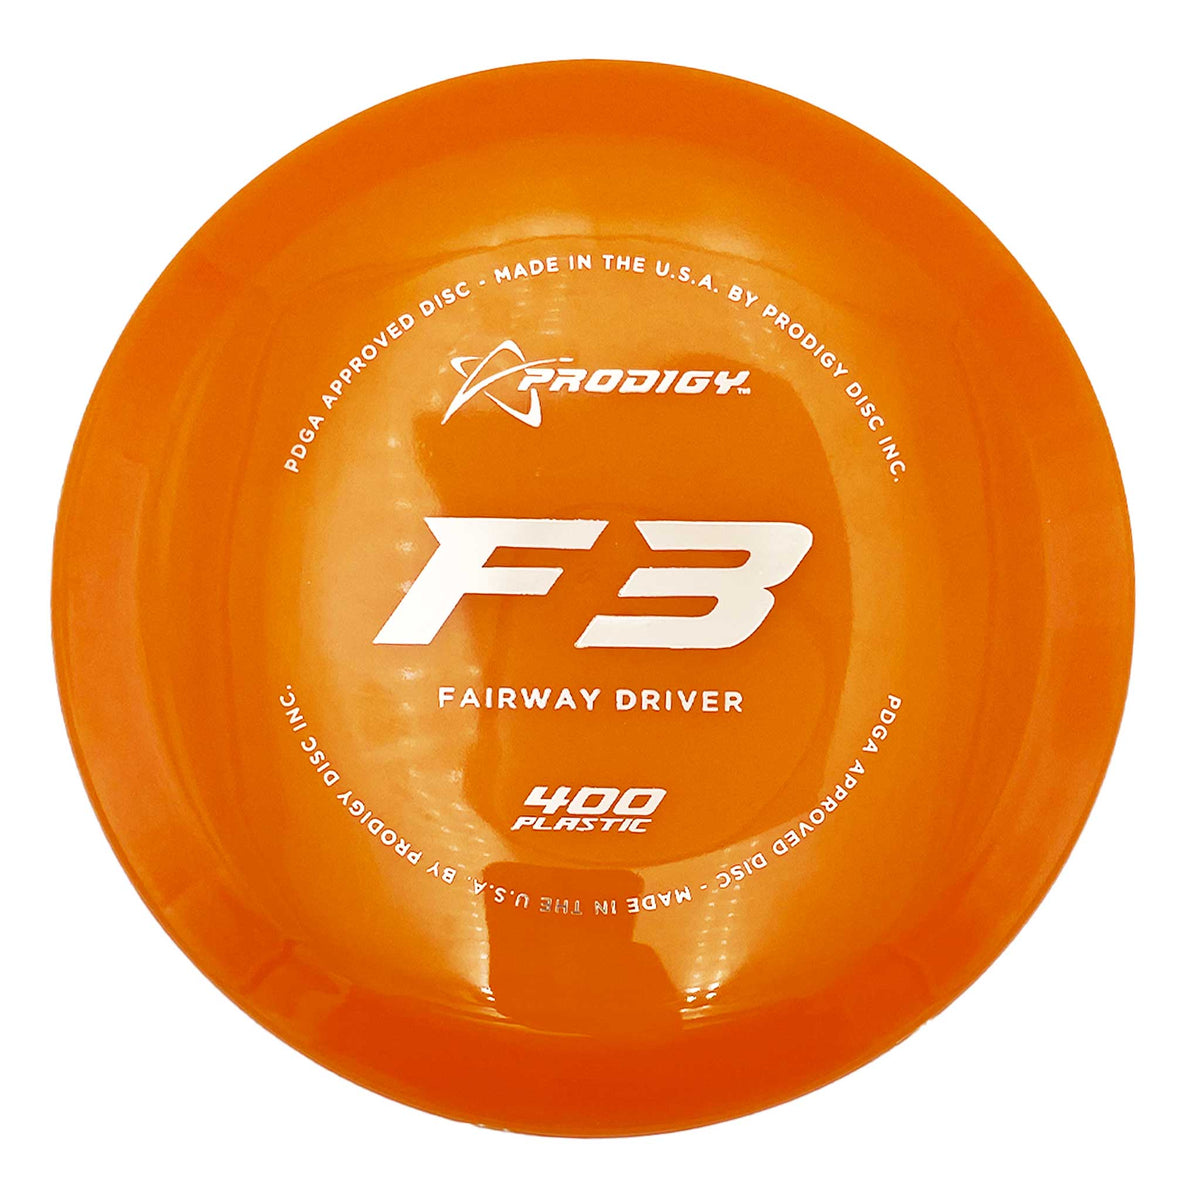 Prodigy 400 F3 Fairway Driver - orange